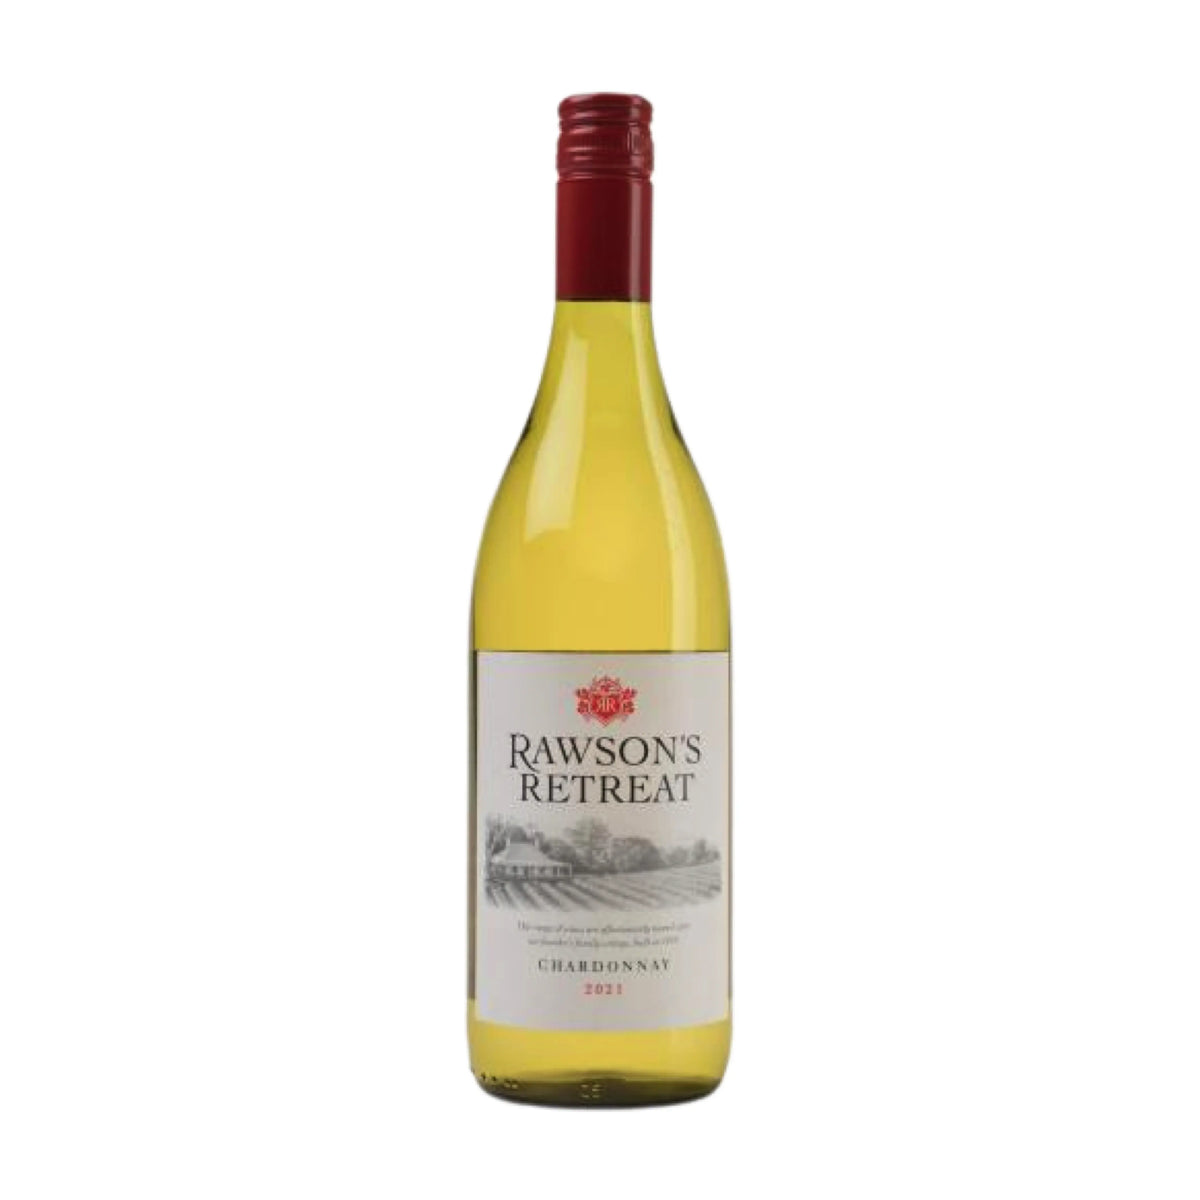 Rawson's Retreat-Weißwein-Chardonnay-2021 Rawson's Retreat Chardonnay-WINECOM